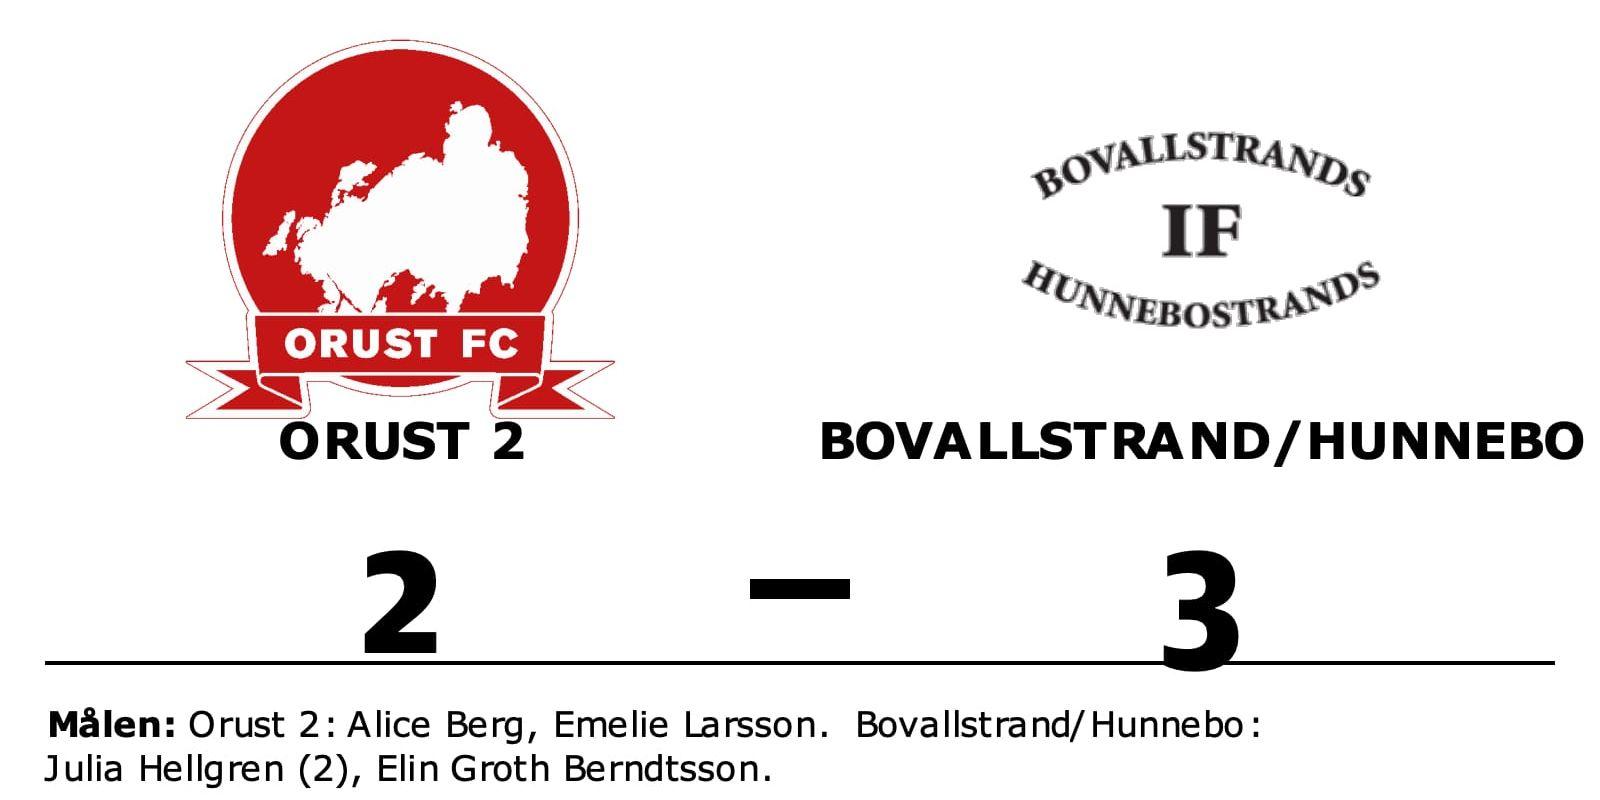 Orust 2 förlorade mot Bovallstrand/Hunnebo